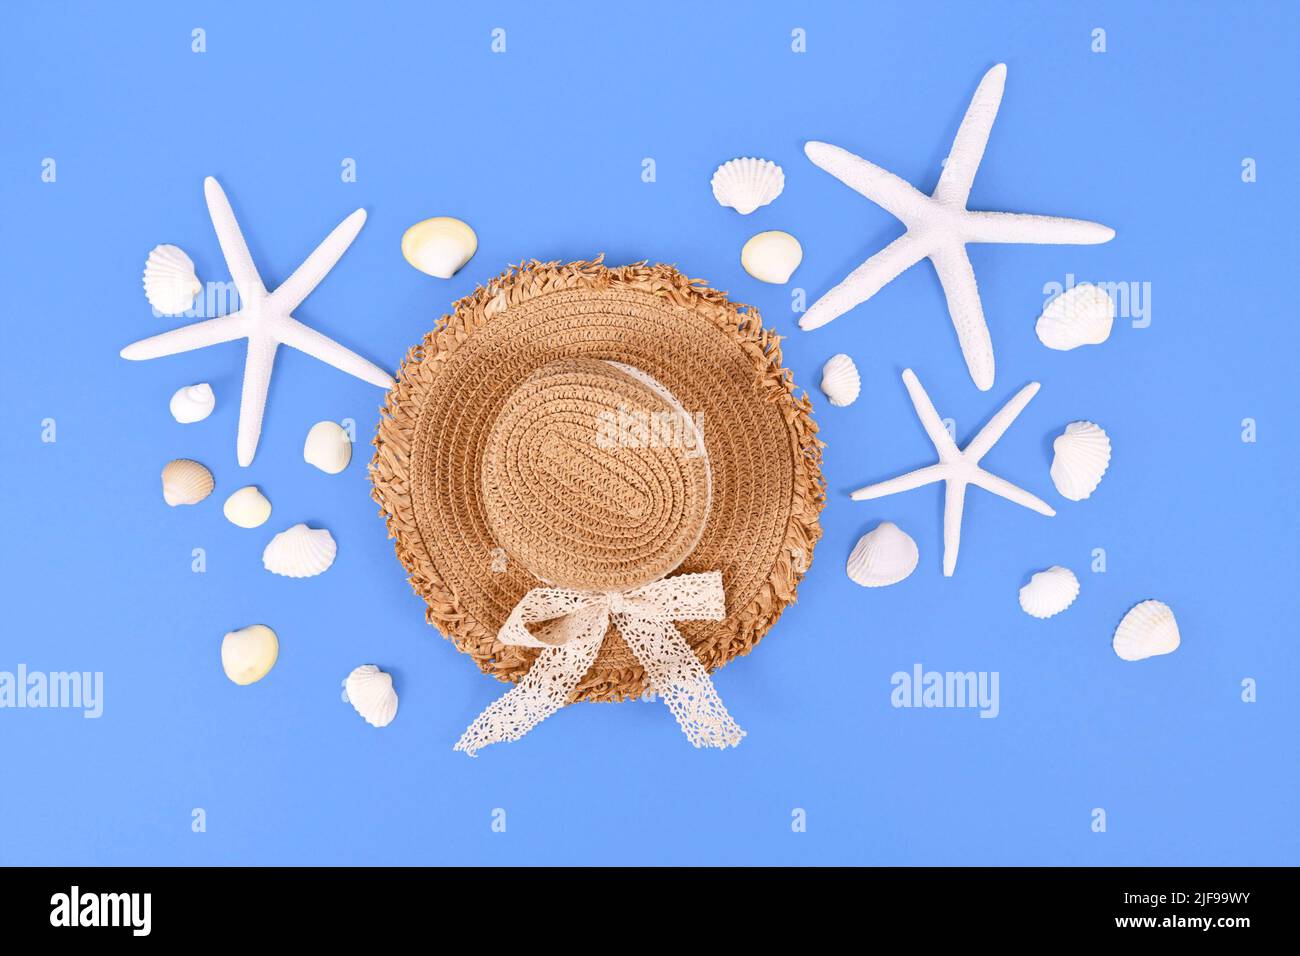 Estrella de mar blanca, conchas marinas y sombrero de paja de verano sobre fondo azul Foto de stock